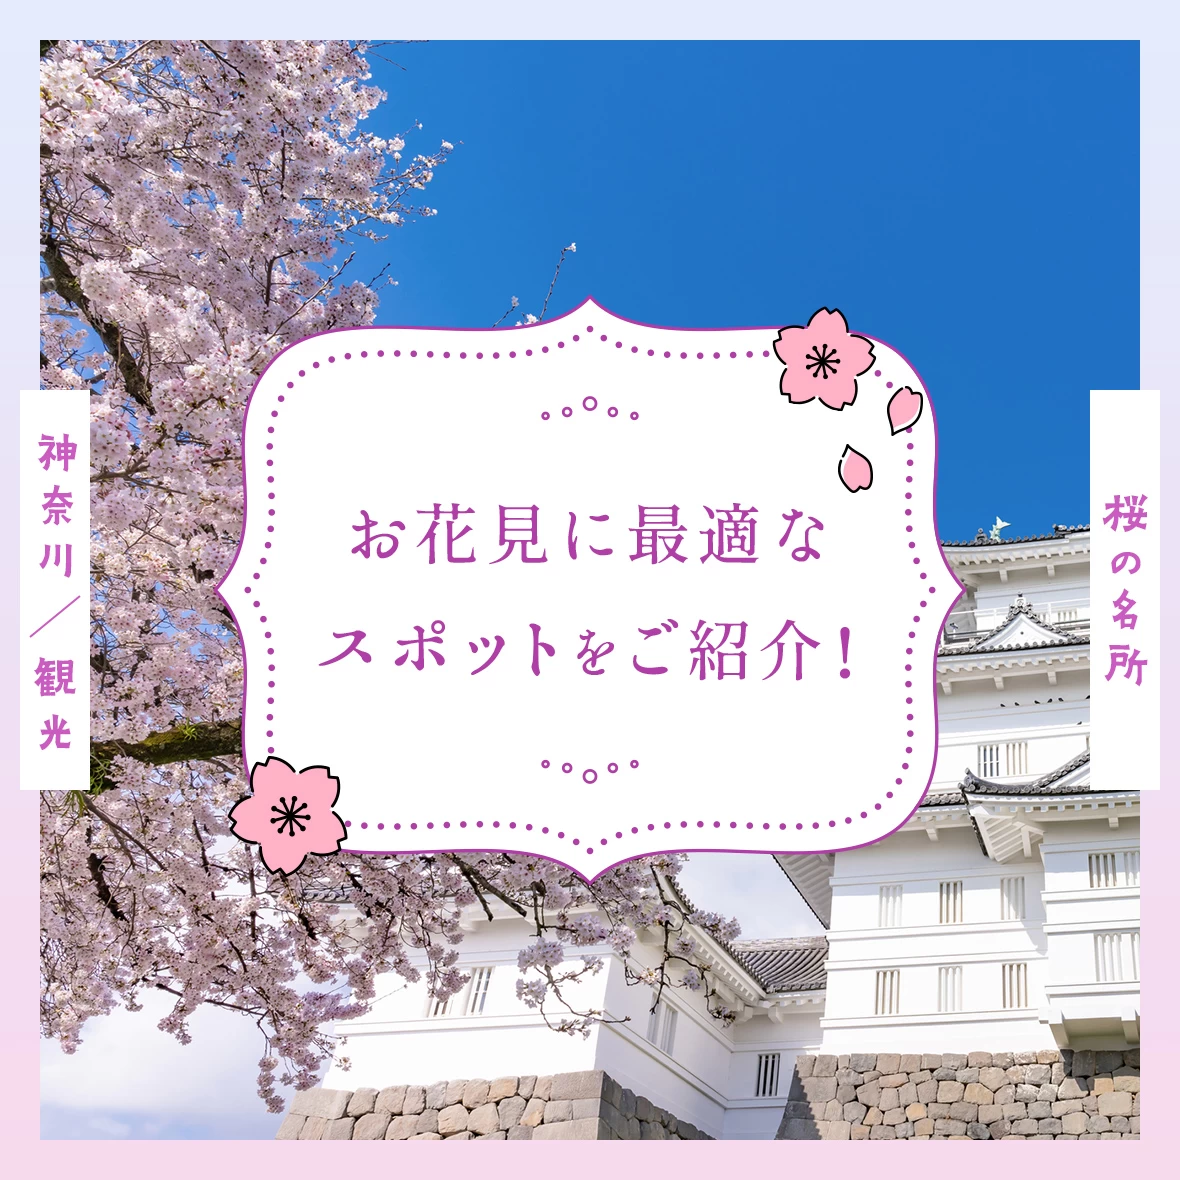 【神奈川観光】桜の名所20選 お花見に最適なスポットをご紹介！
